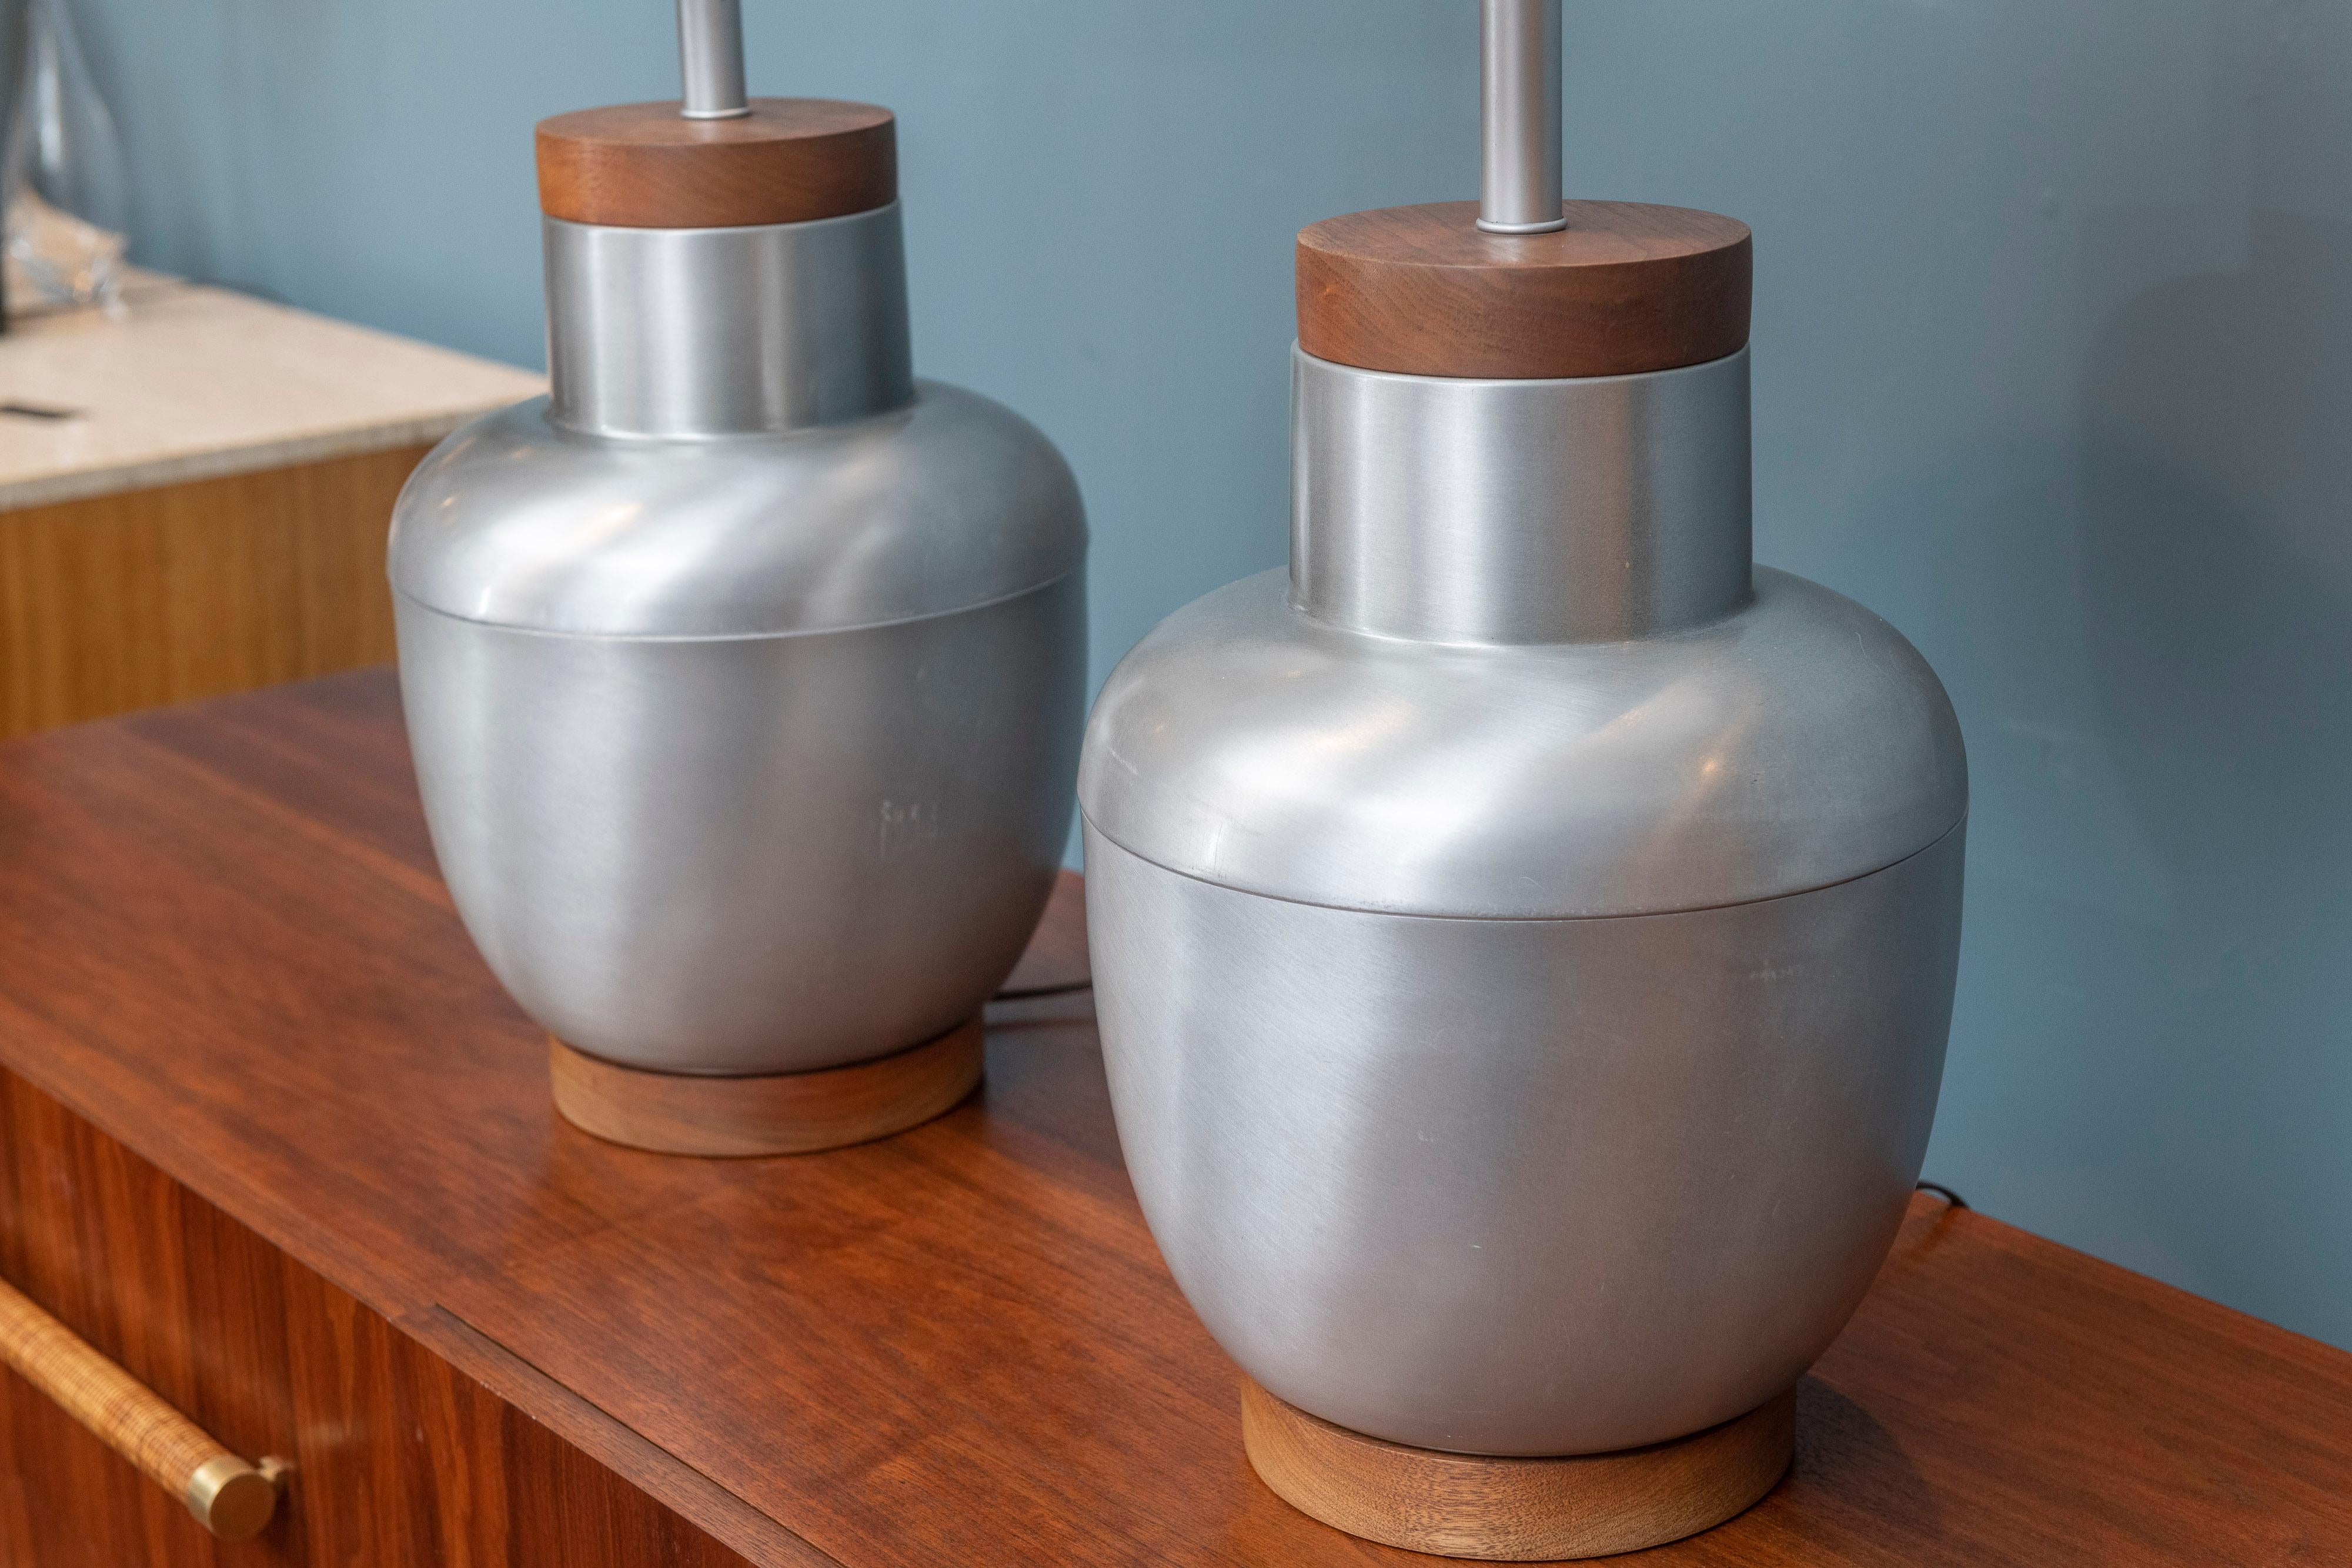 Lampes de table décoratives en aluminium filé, datant du milieu du siècle, avec des bases et des dessus en noyer. Elles viennent d'être recâblées et sont prêtes à être installées. Les lampes sont de fabrication américaine de haute qualité par un